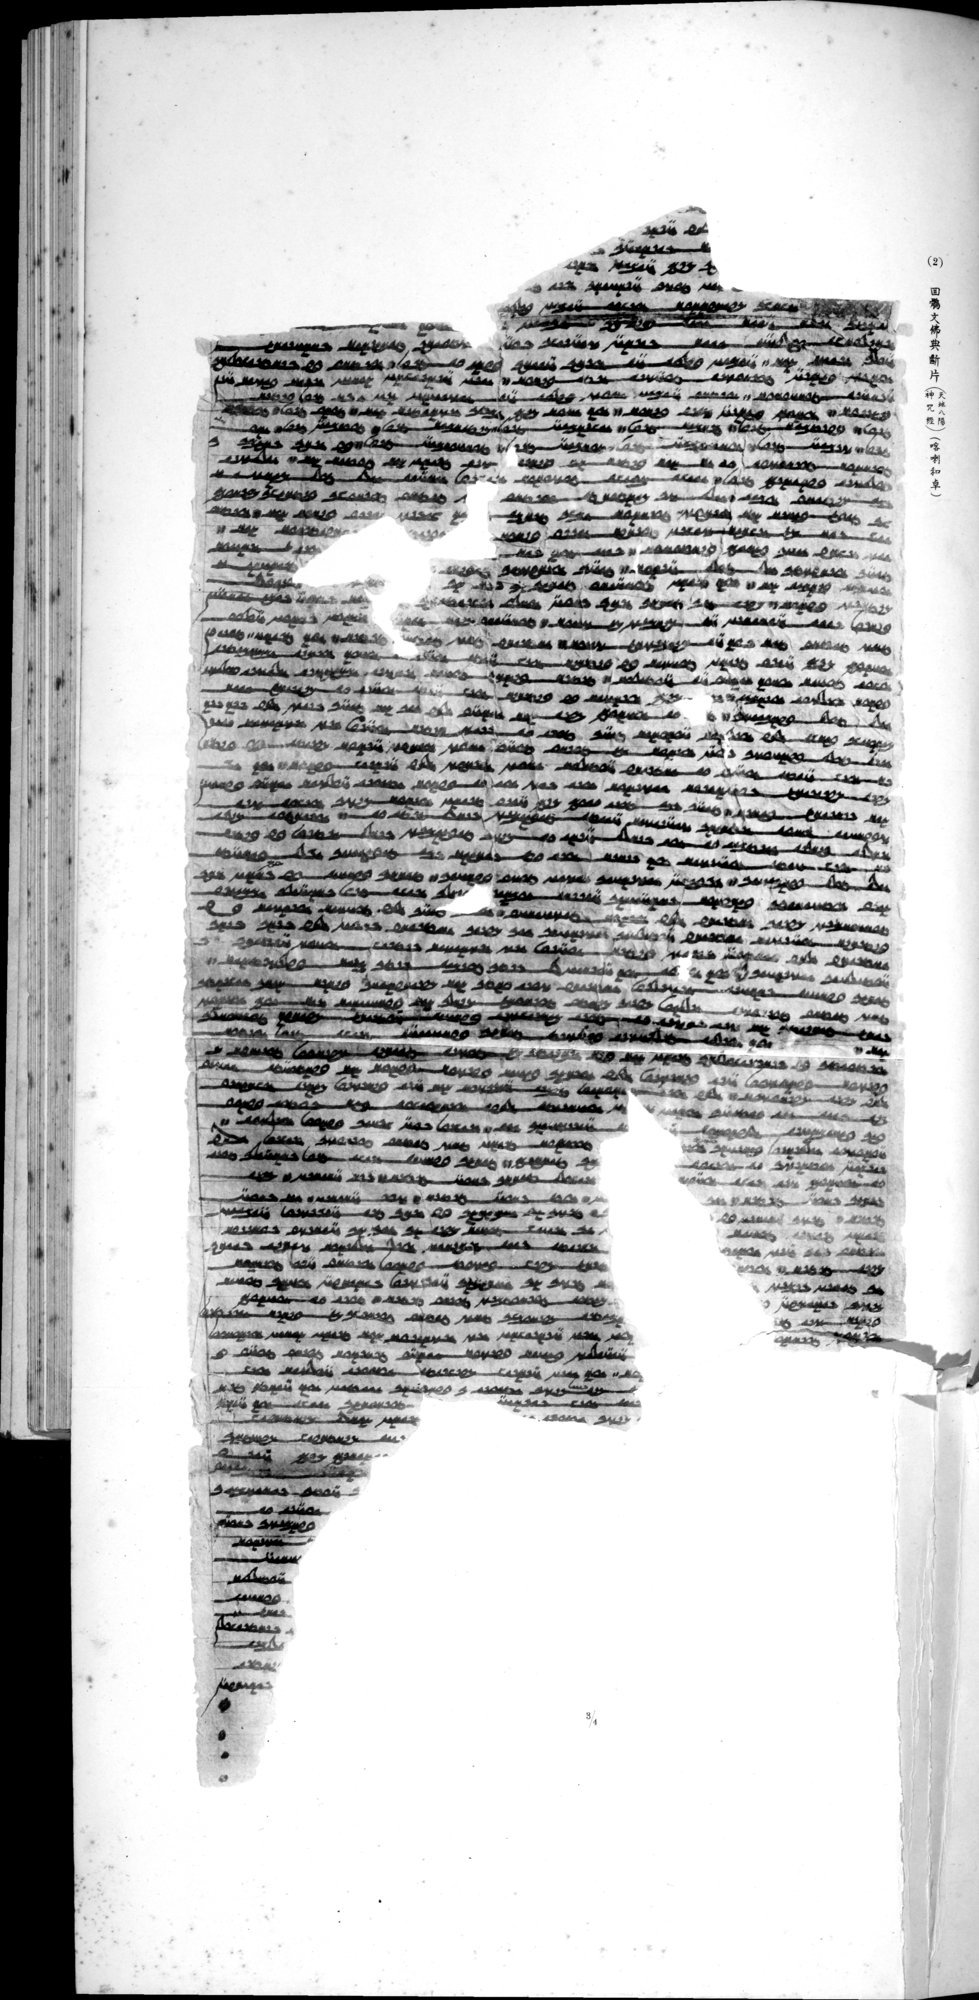 西域考古図譜 : vol.2 / Page 257 (Grayscale High Resolution Image)